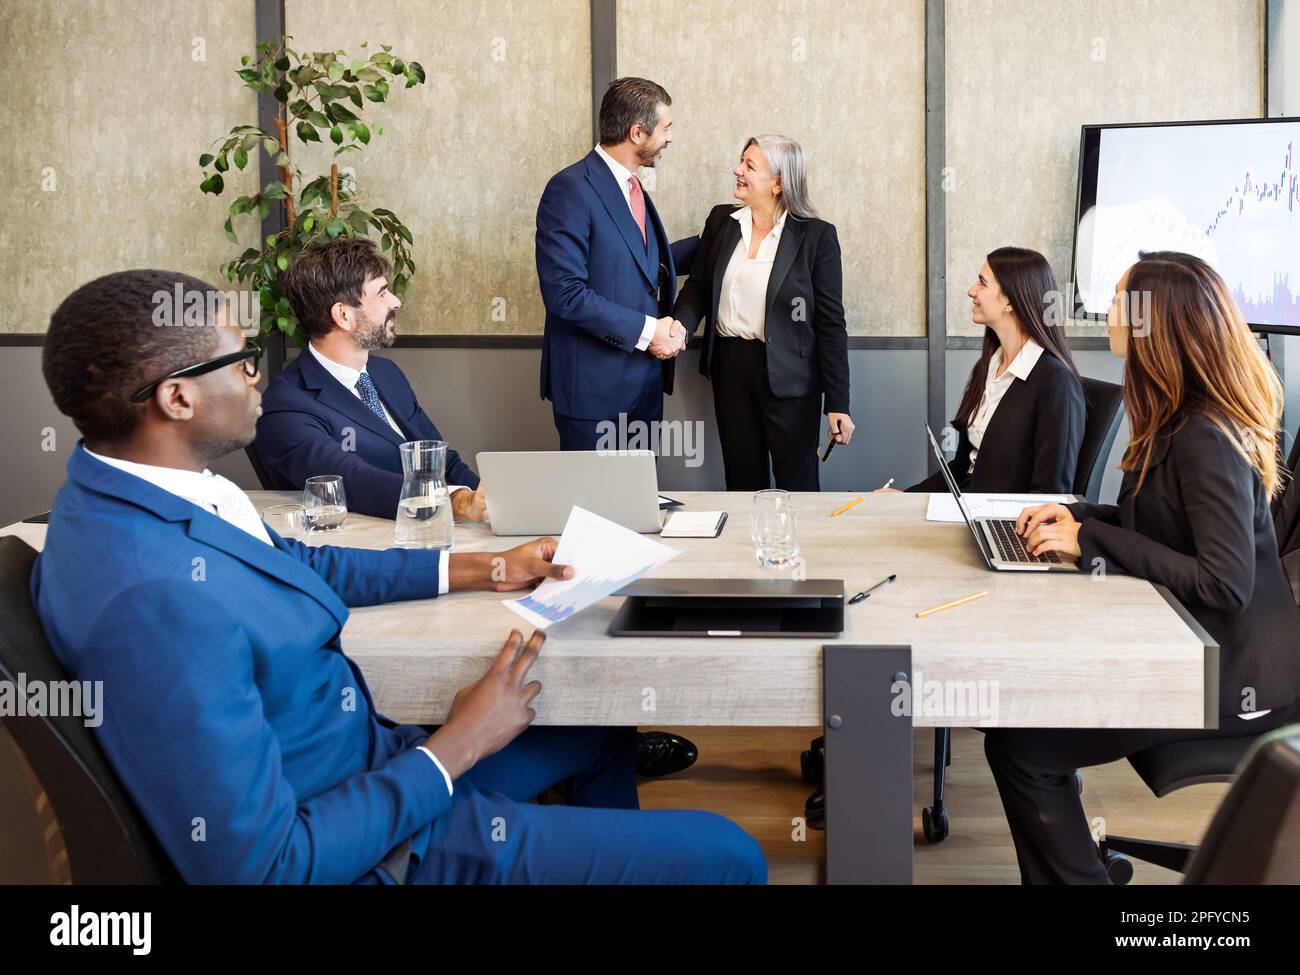 Grupo de empresarios diversos en ropa formal sentado en la mesa y mirando a los compañeros de trabajo estrechando la mano durante la reunión de negocios en la oficina moderna Foto de stock